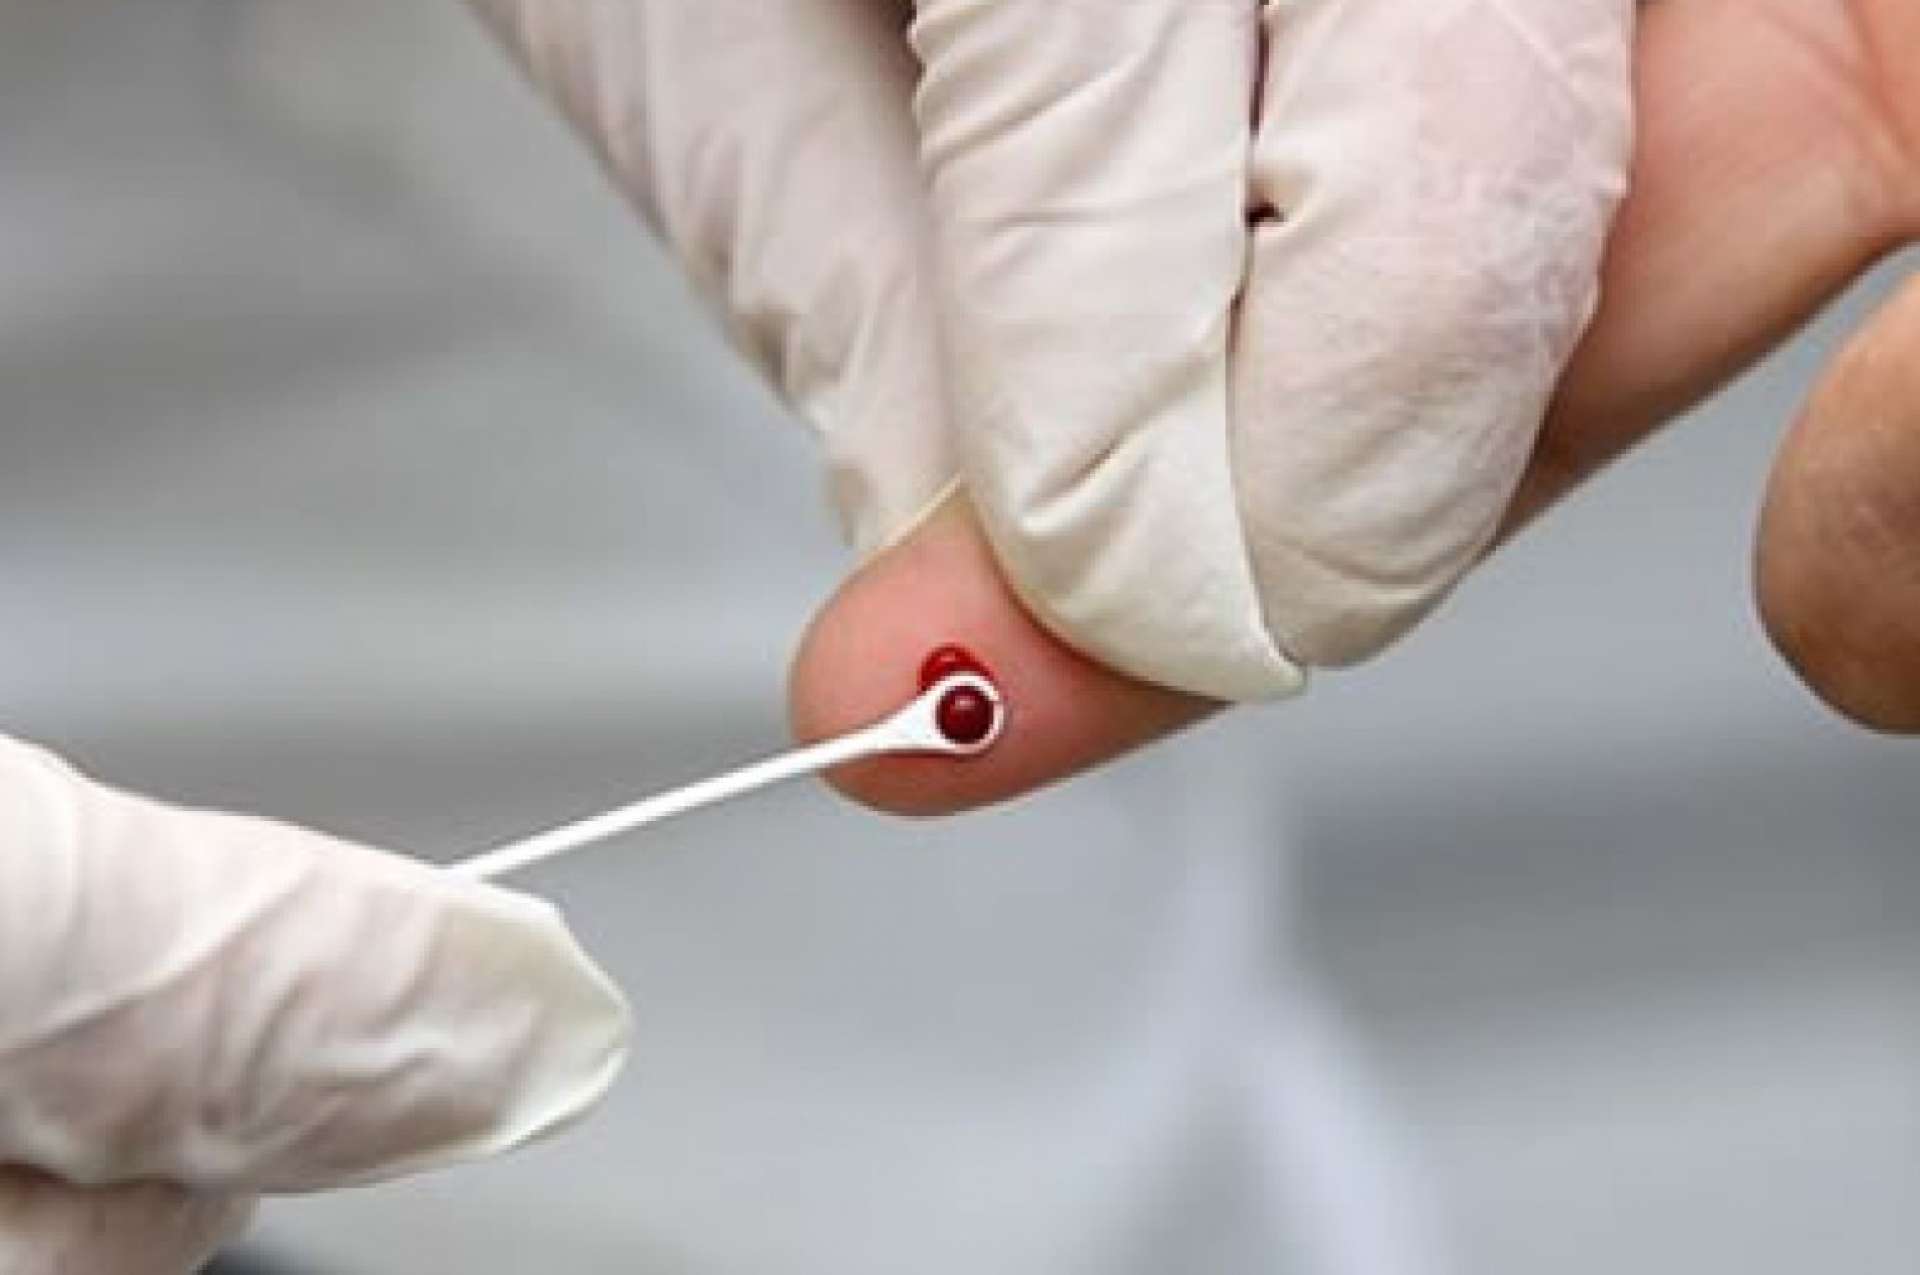 Testes de VIH e hepatites nas farmácias sem necessidade de prescrição médica